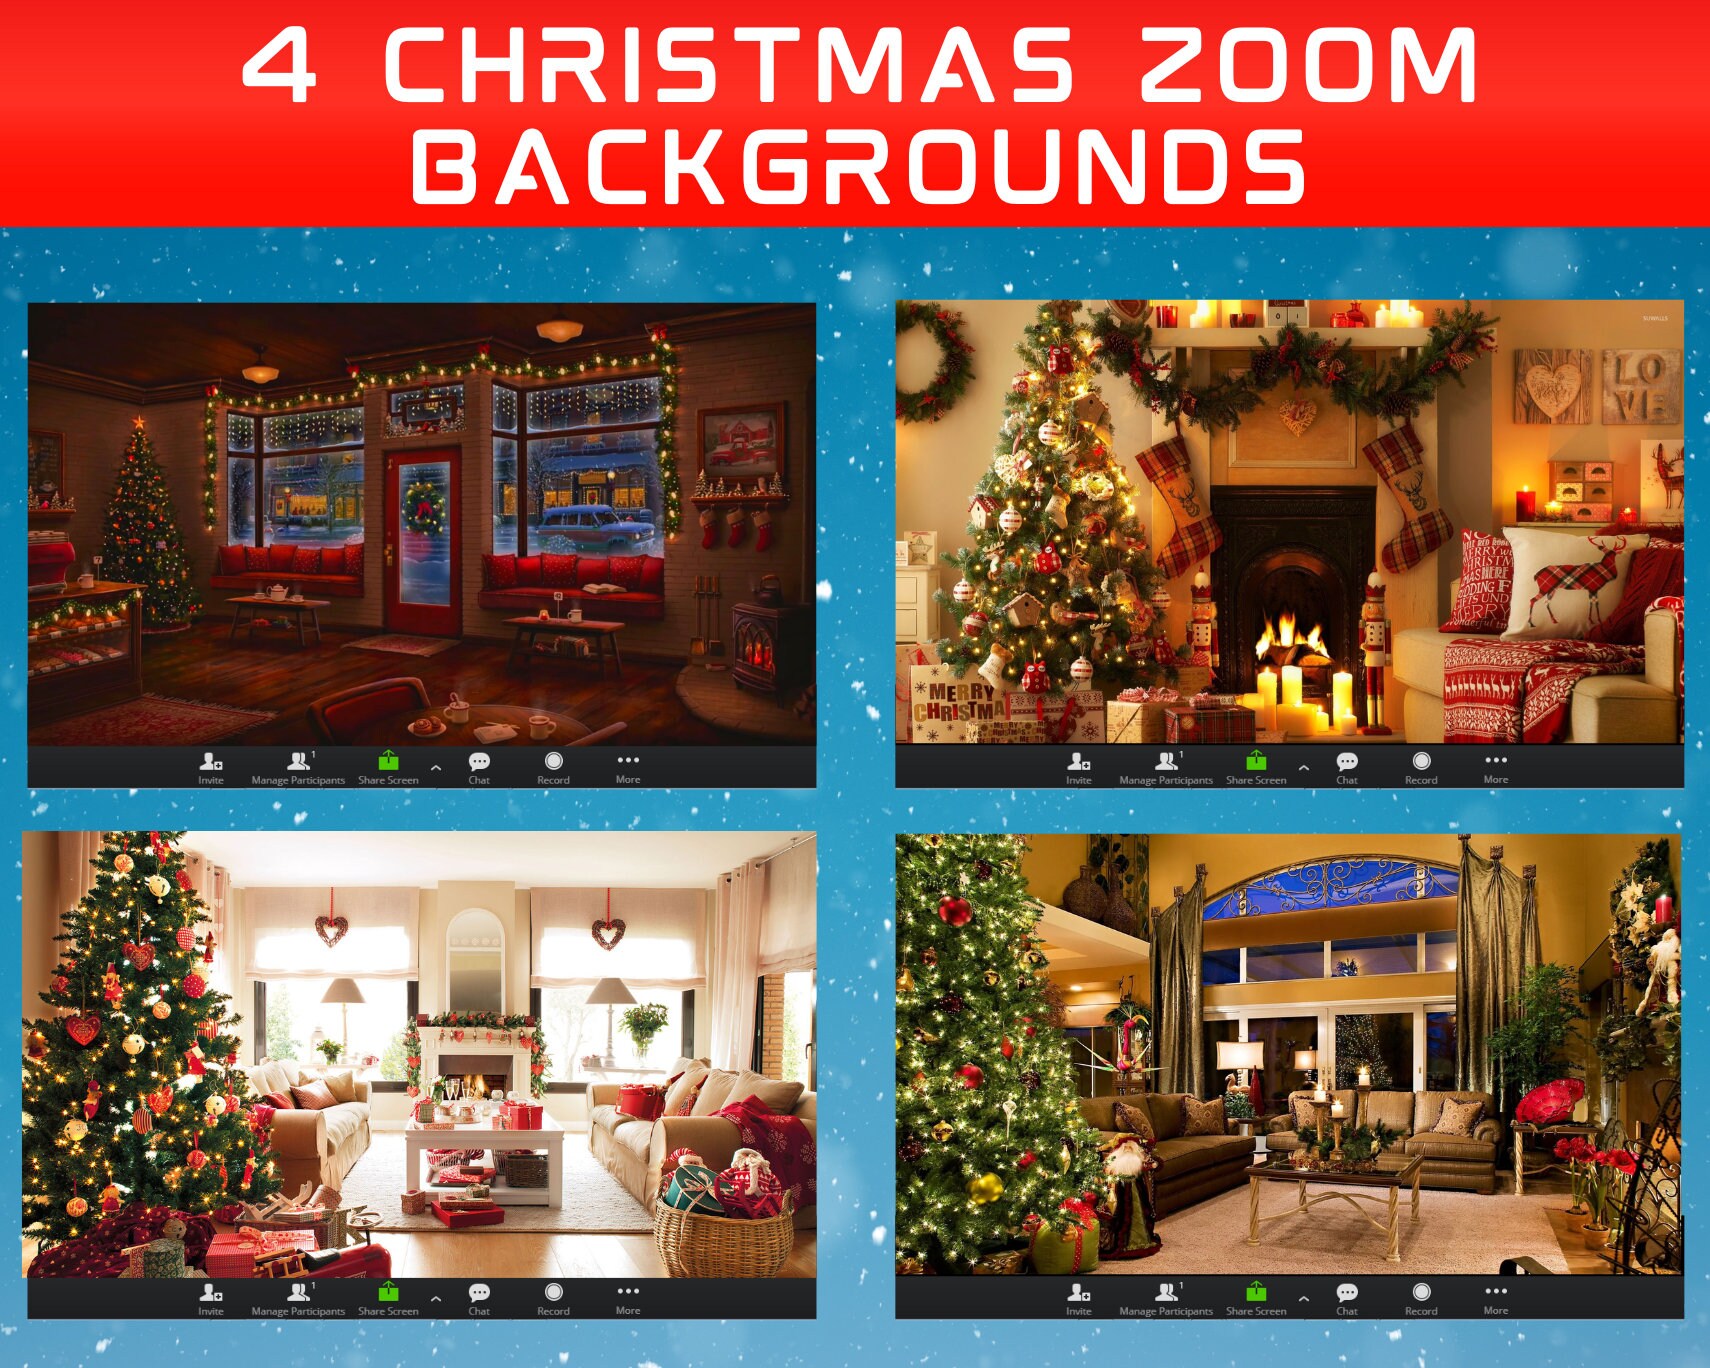 Với Zoom Christmas background, bạn có thể tạo không khí Giáng sinh hoàn hảo và độc đáo cho buổi họp trực tuyến của mình. Hãy cùng khám phá những hình ảnh đẹp lung linh, sắc nét cùng những hoạt hình ngộ nghĩnh trong không gian mùa lễ hội này!